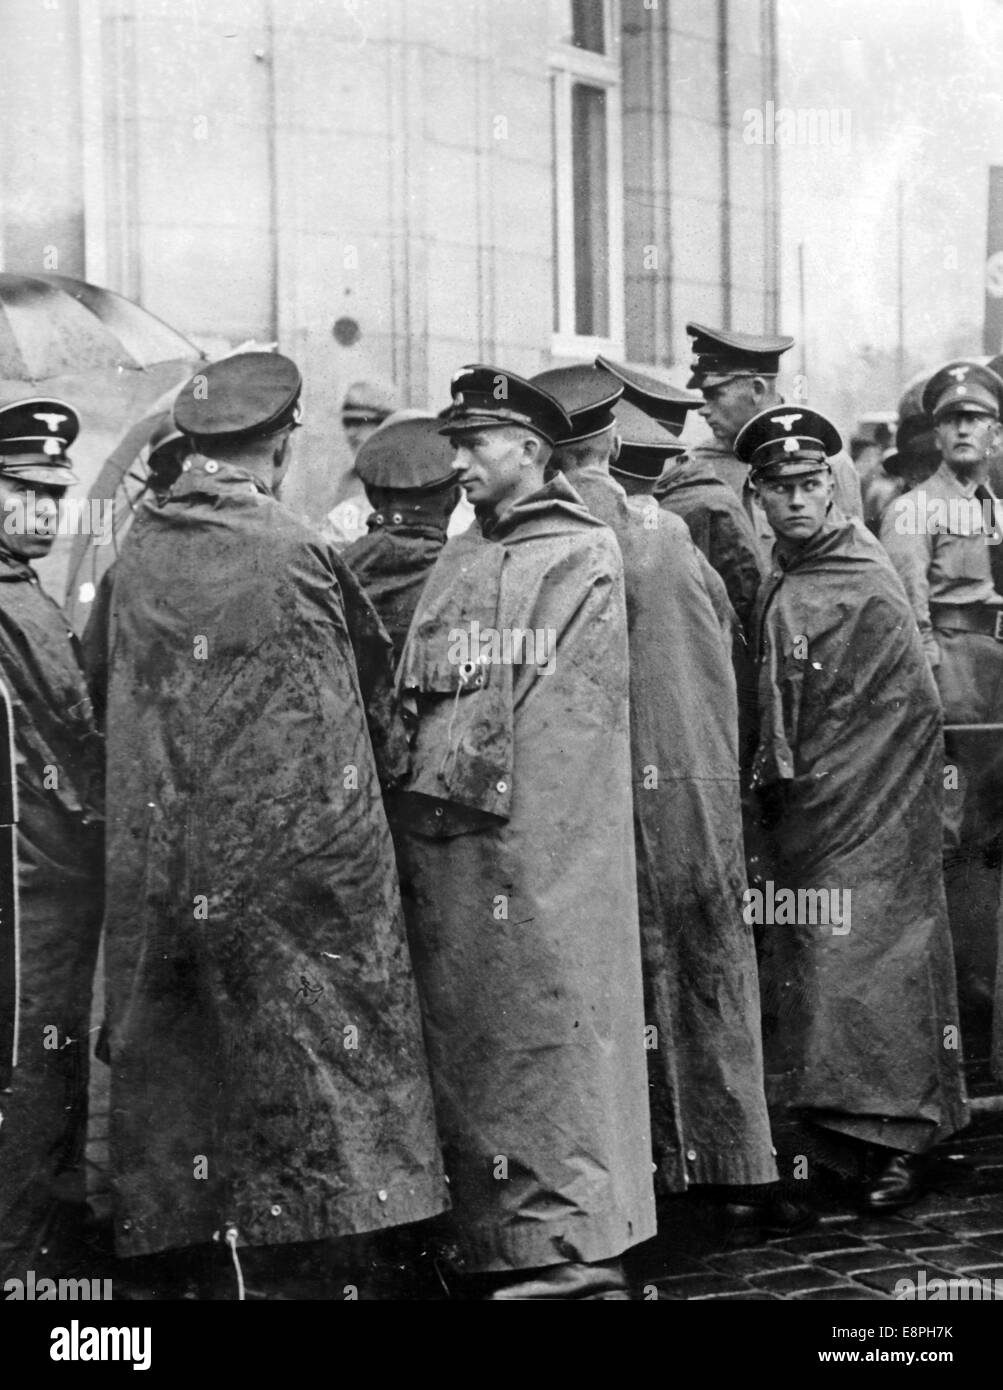 Rallye de Nuremberg 1937 à Nuremberg, Allemagne - les membres du Schutzstaffel (SS) se protègent de la pluie en se enveloppant dans des abris-demi. (Défauts de qualité dus à la copie historique de l'image) Fotoarchiv für Zeitgeschichtee - PAS DE SERVICE DE FIL - Banque D'Images